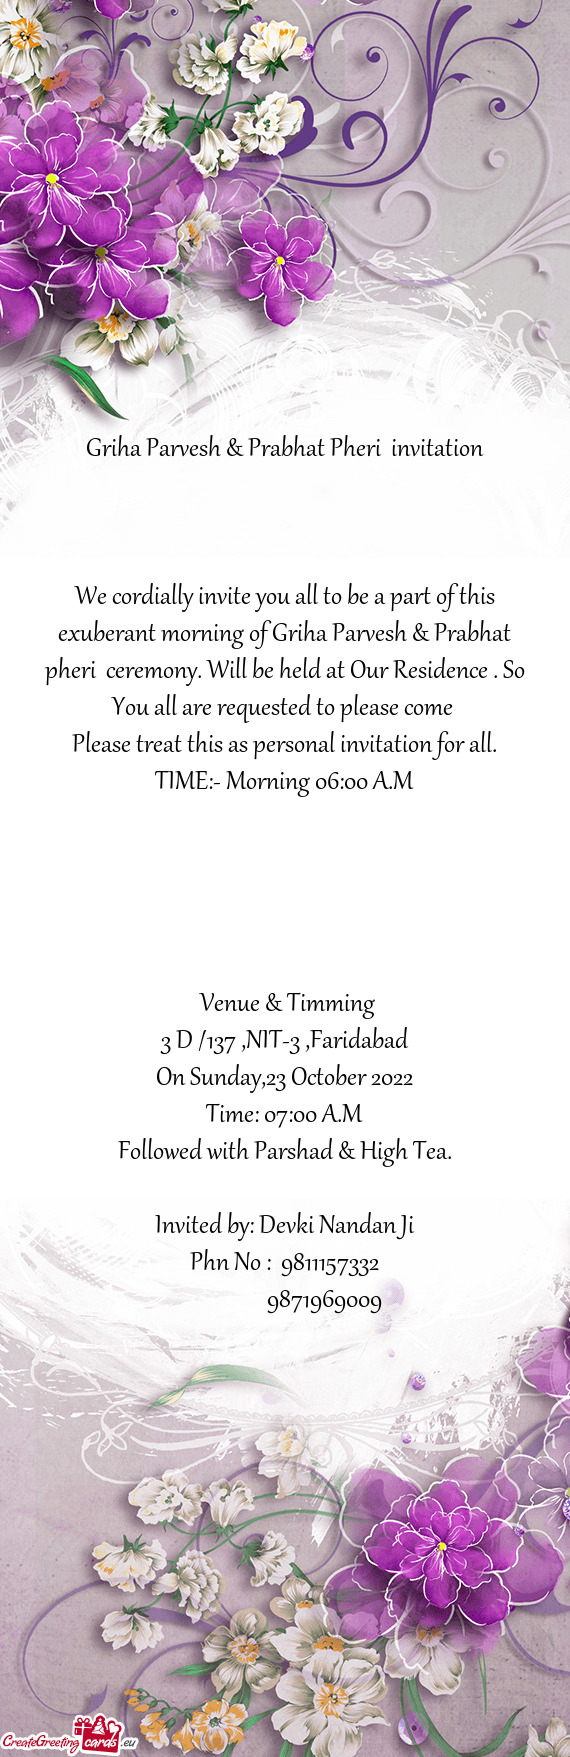 Griha Parvesh & Prabhat Pheri invitation